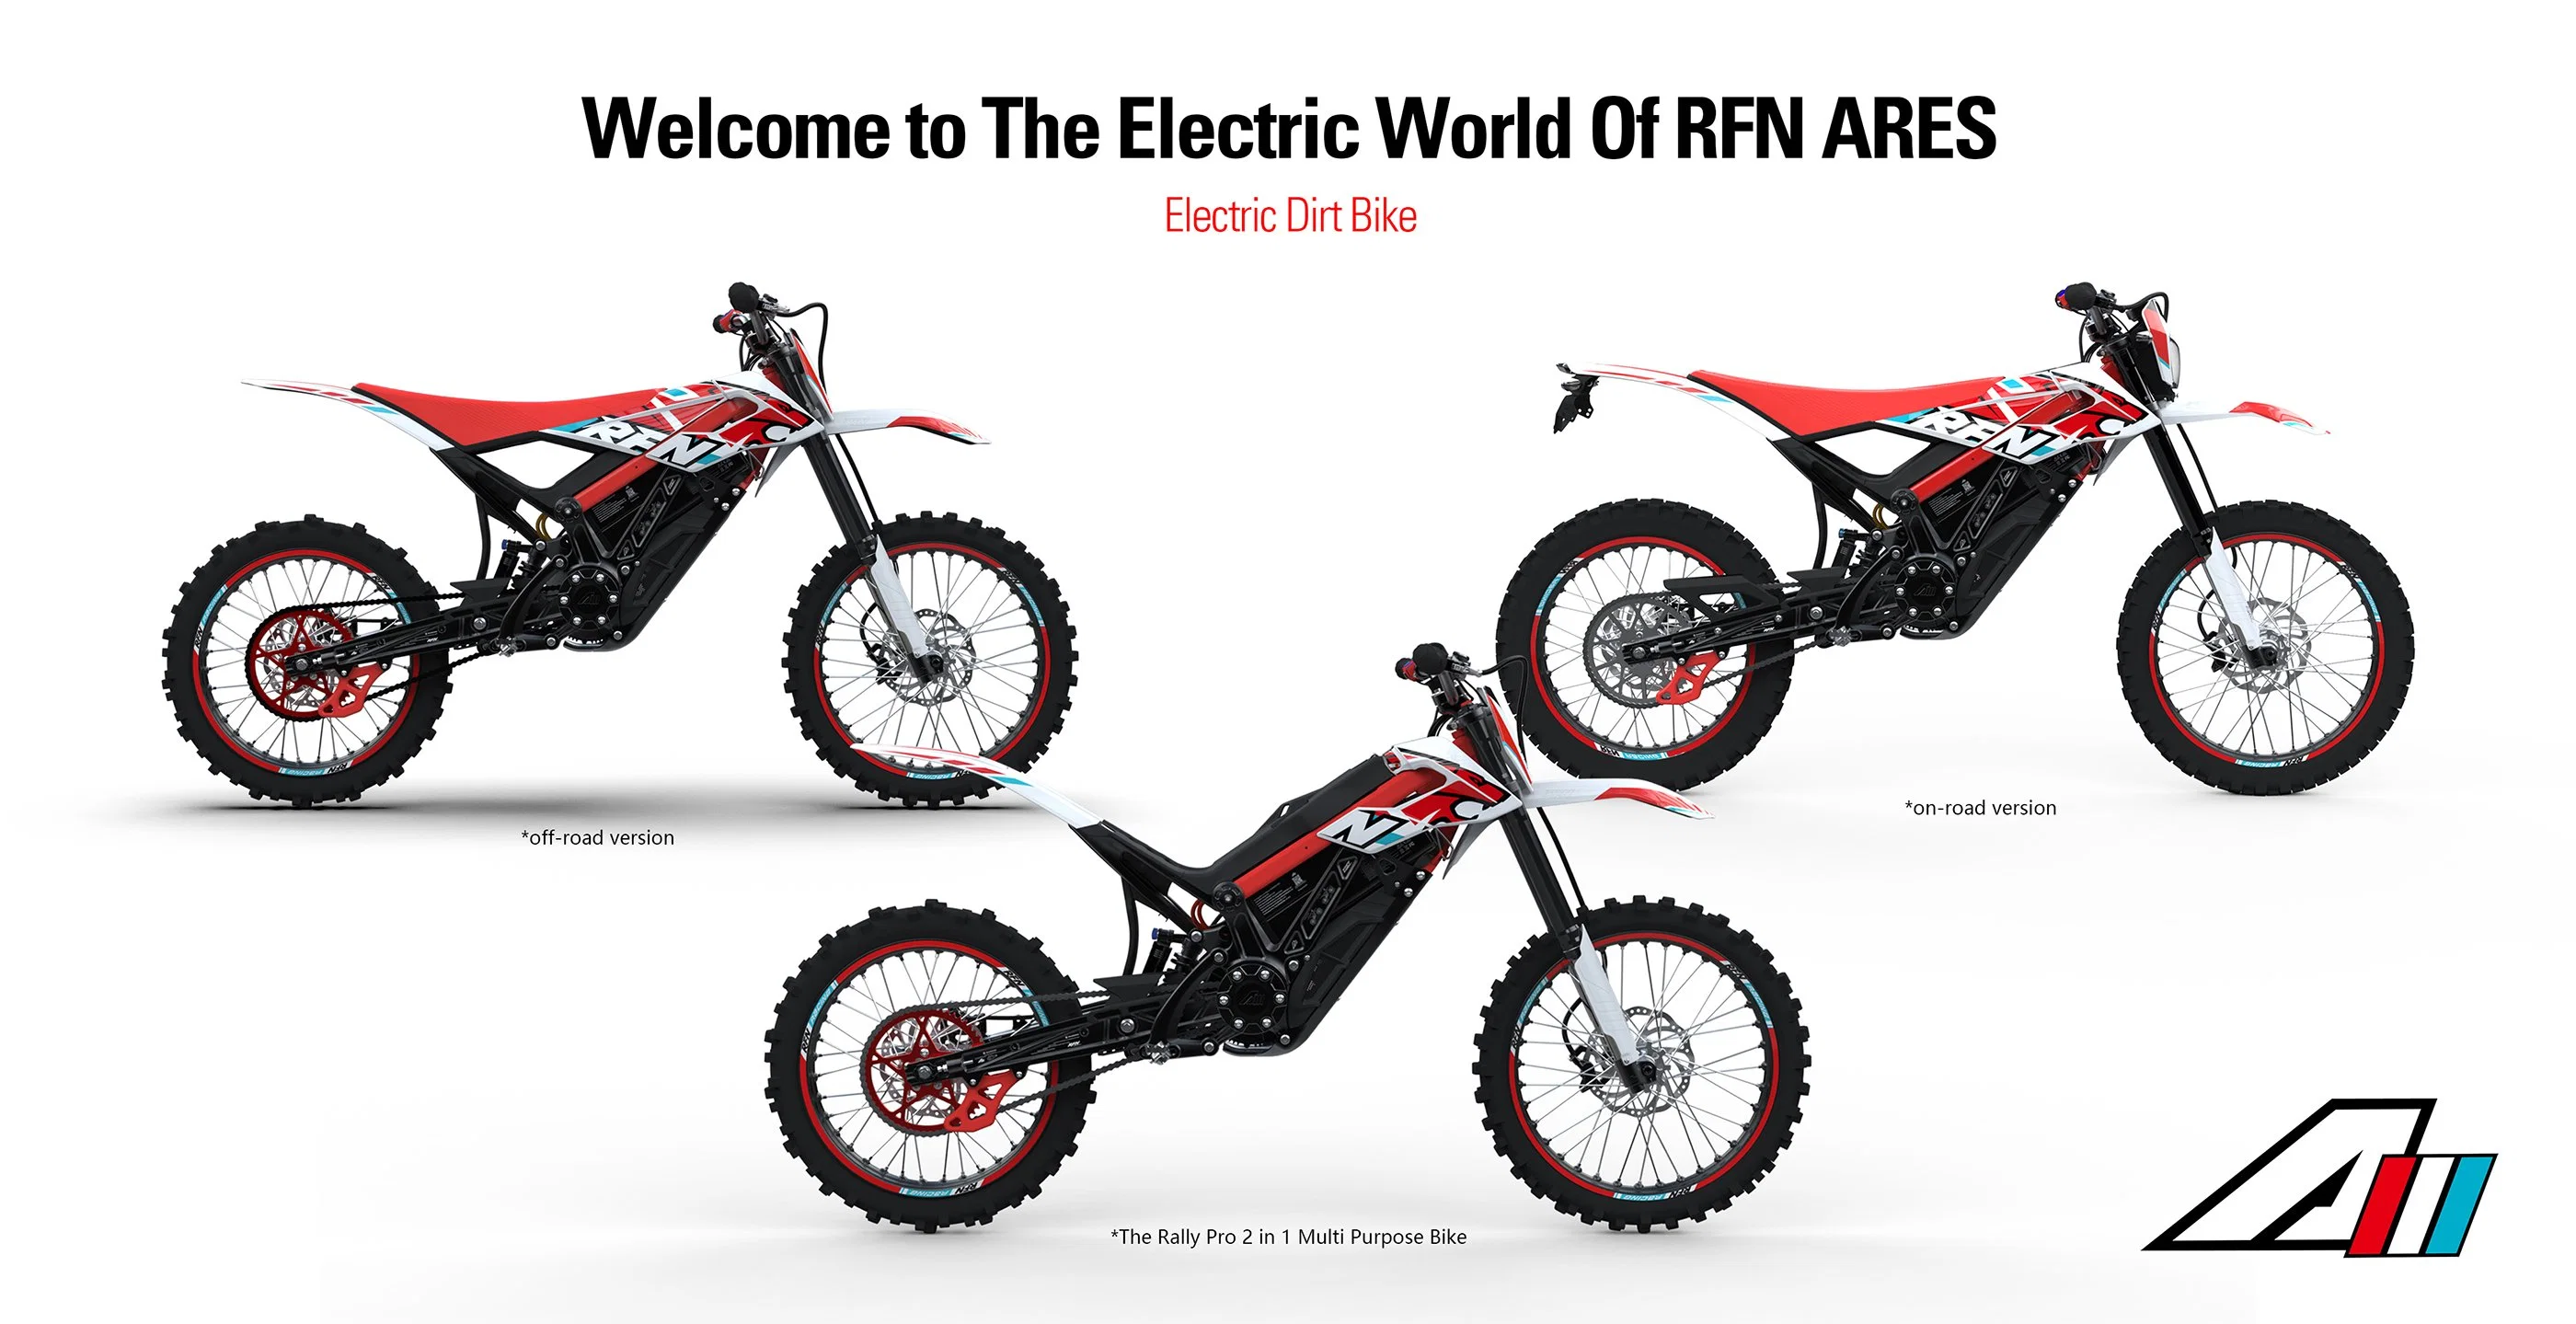 دراجة Rfn Ares Rally PRO Electric off Road Dirt Bike Electric Motorcycle مع بطارية ليثيوم دراجة نارية كهربائية Motocross كهربائية دراجة Pit Bike بالغة Apollo Motorcycle